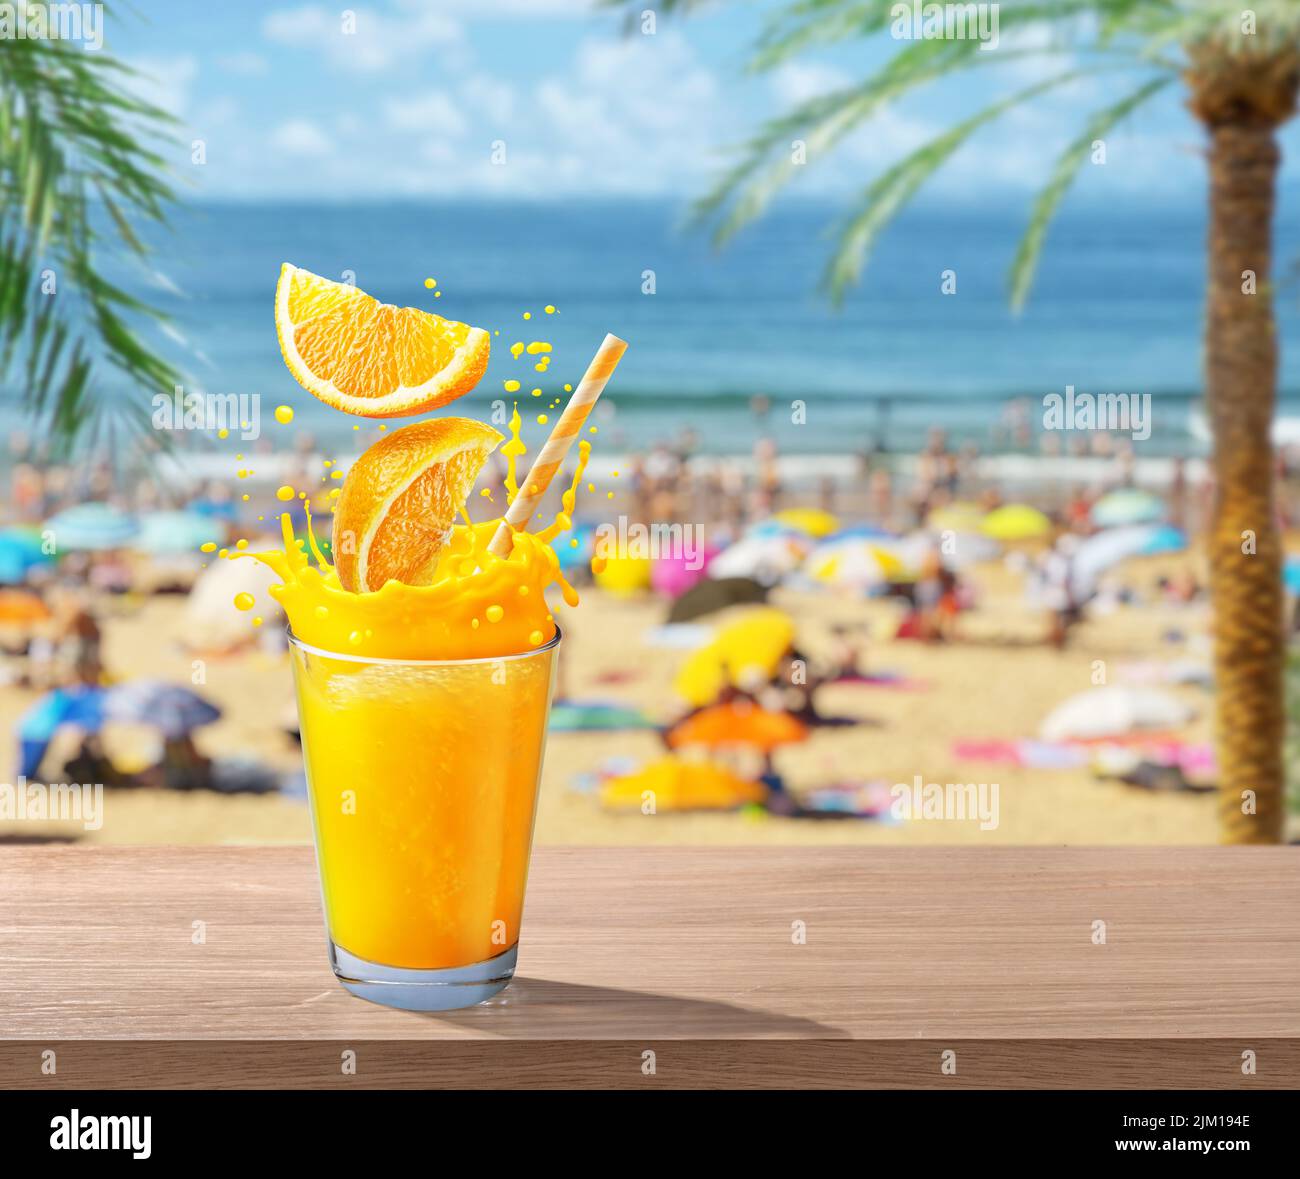 Vaso de zumo de naranja con chapoteo. Foto borrosa de playa abarrotada al fondo. Concepto de vacaciones de verano. Foto de stock